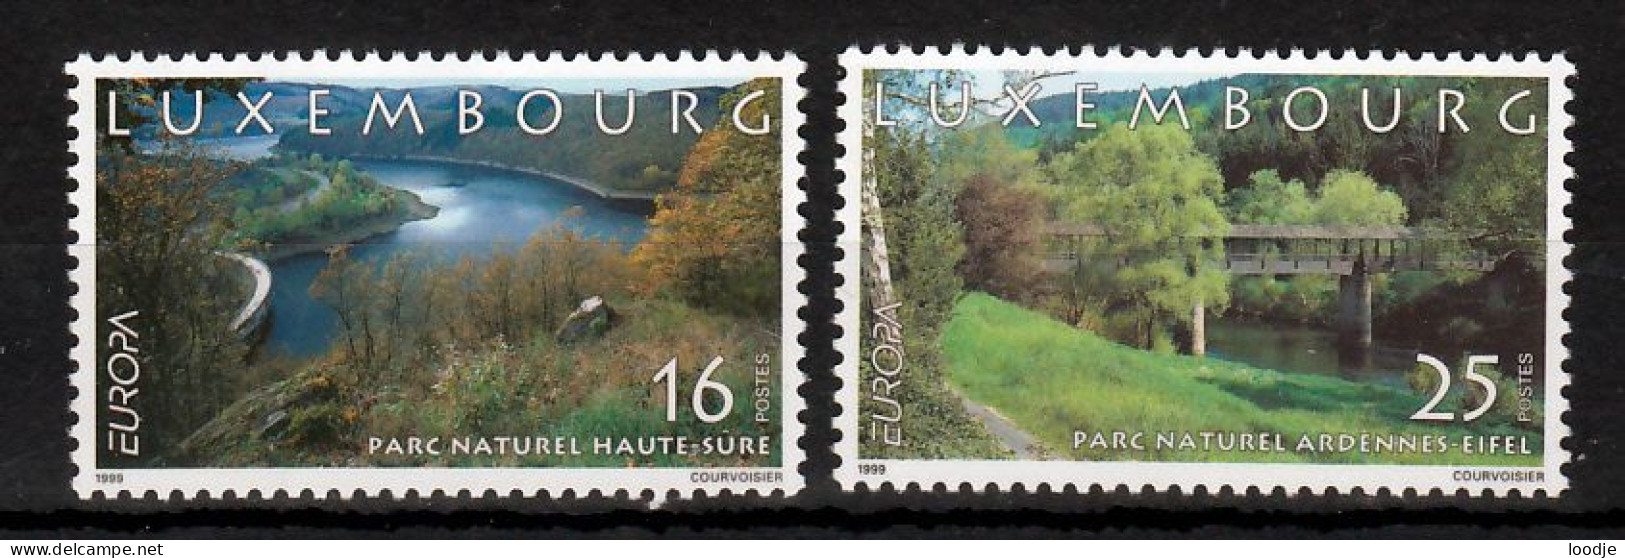 Luxemburg Europa Cept 1999 Postfris - 1999